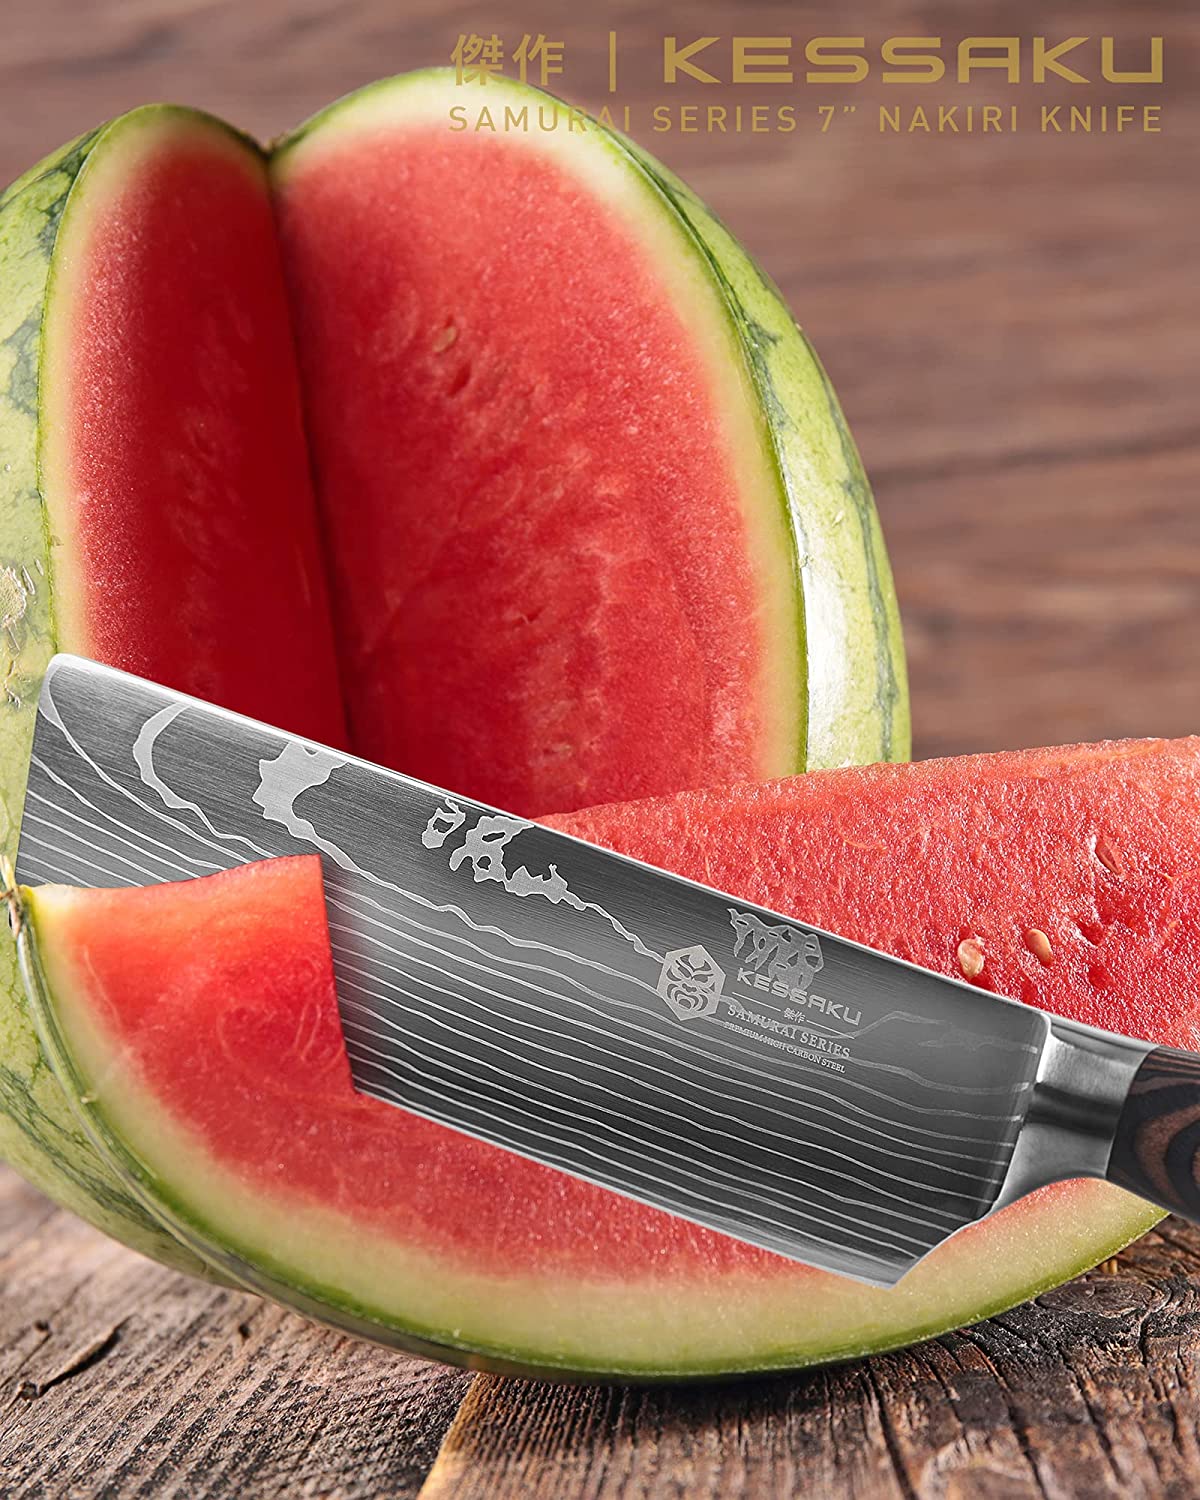 What is a Nakiri Knife?